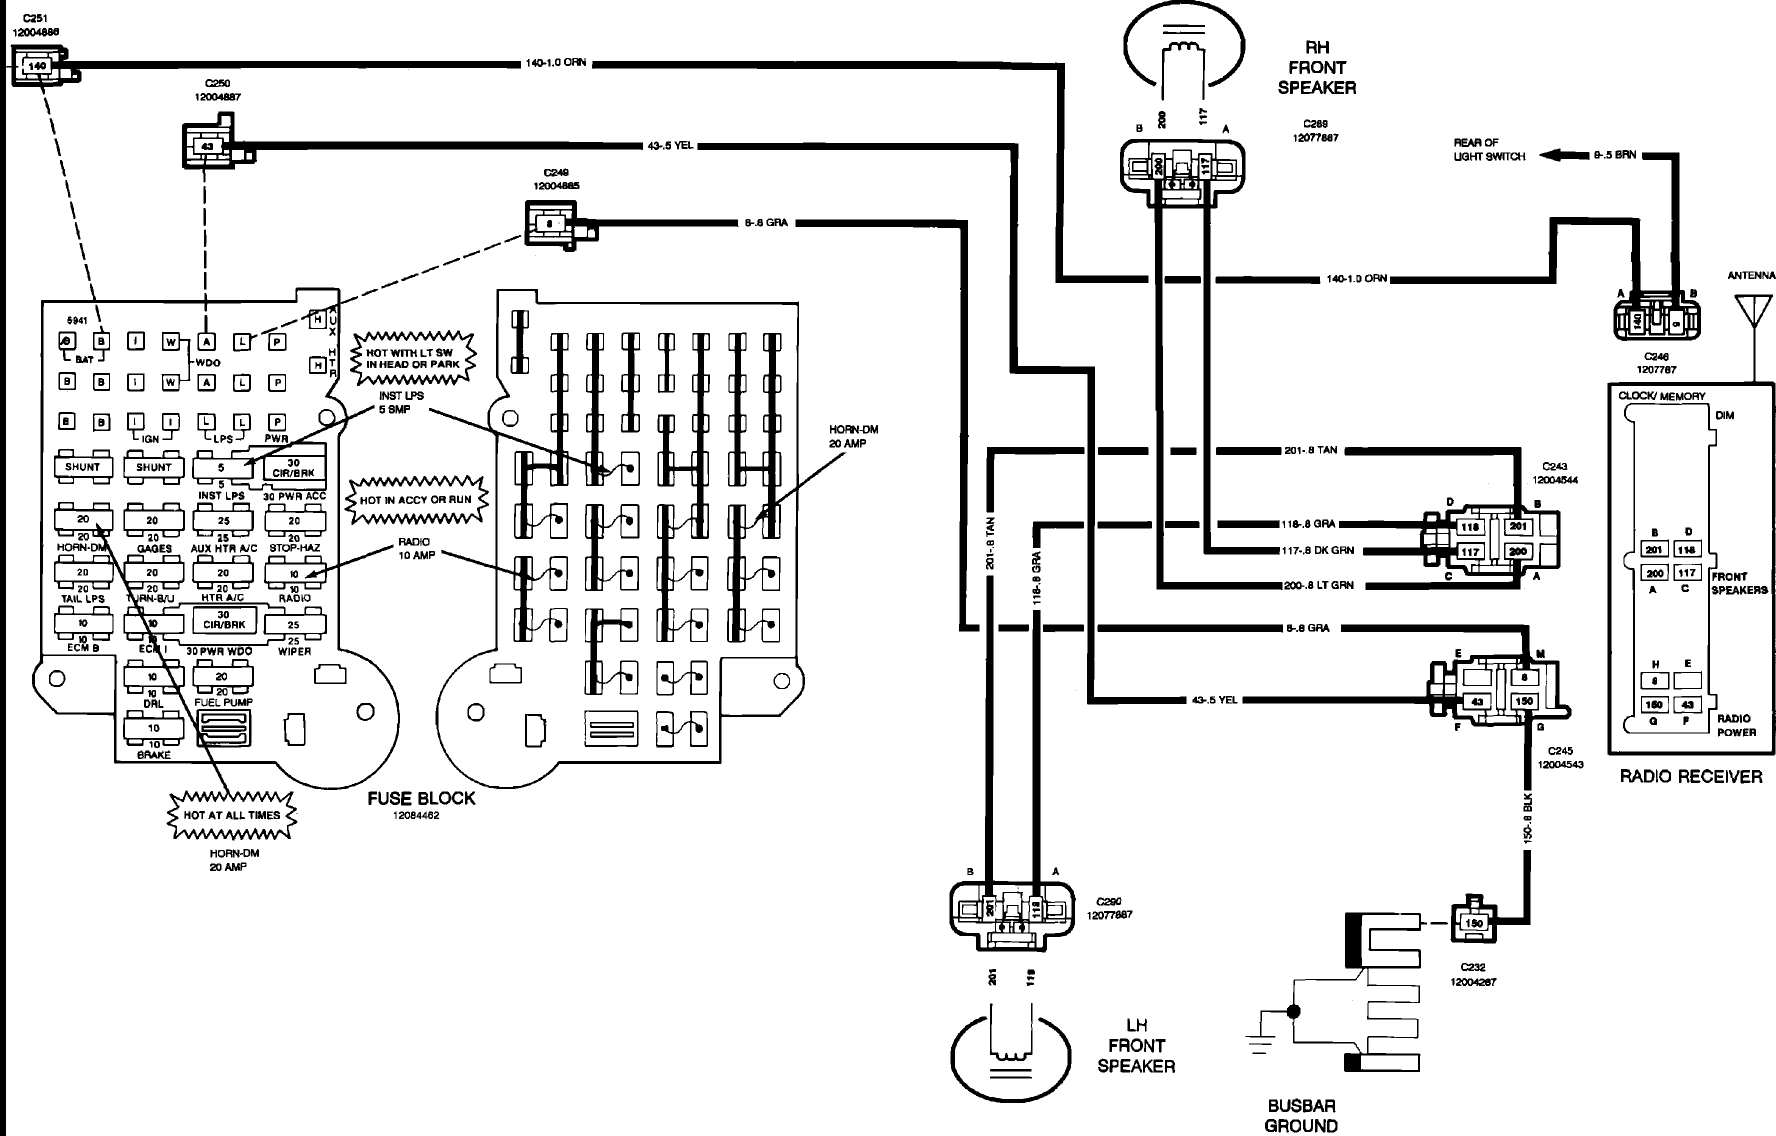 1998 p30 step van wiring diagram